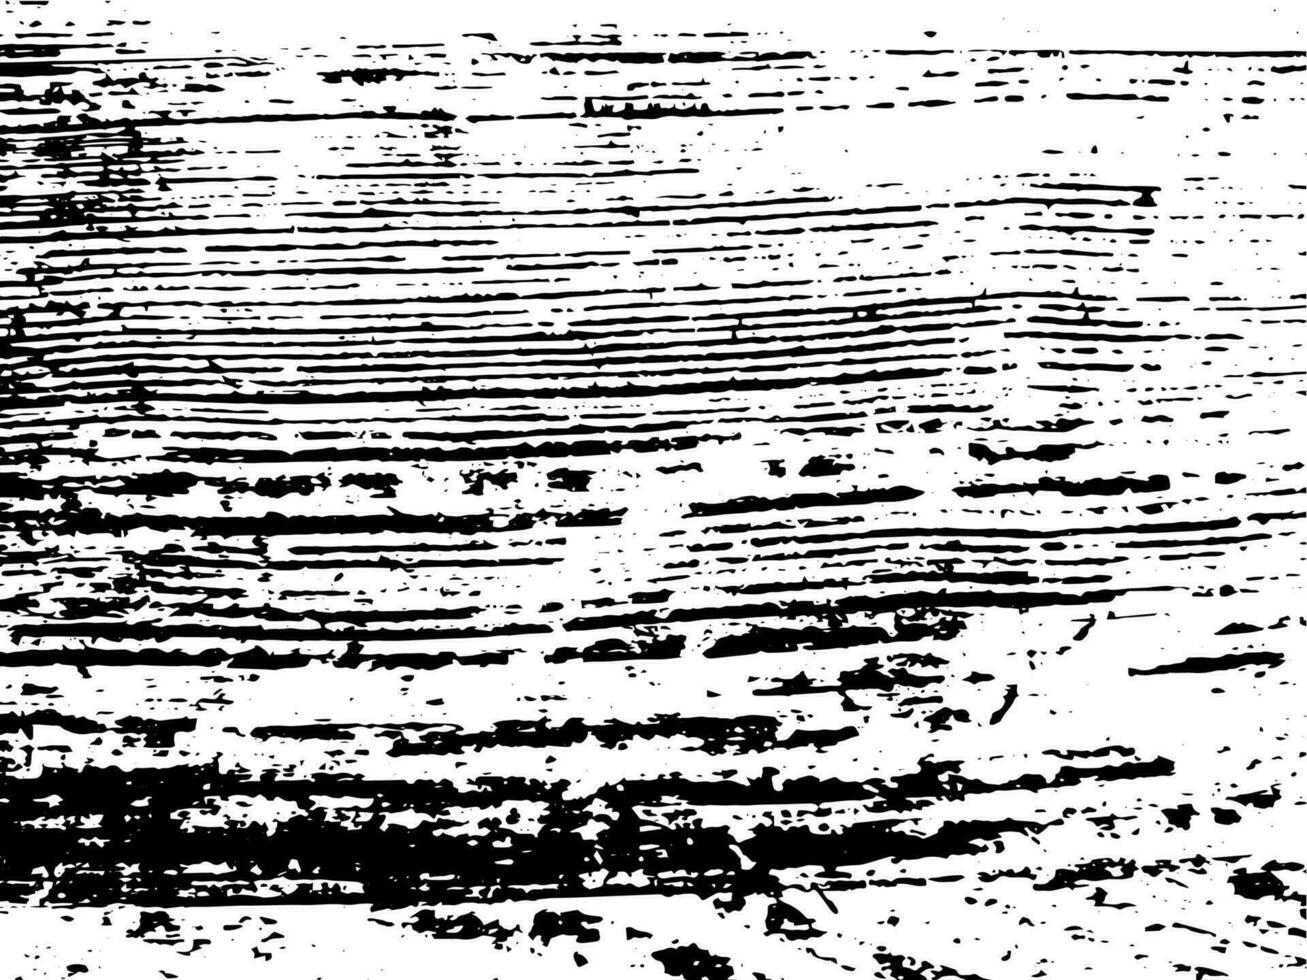 grunge textura monocromática de madera natural. fondo de superposición de superficie de madera abstracta en blanco y negro. ilustración vectorial vector